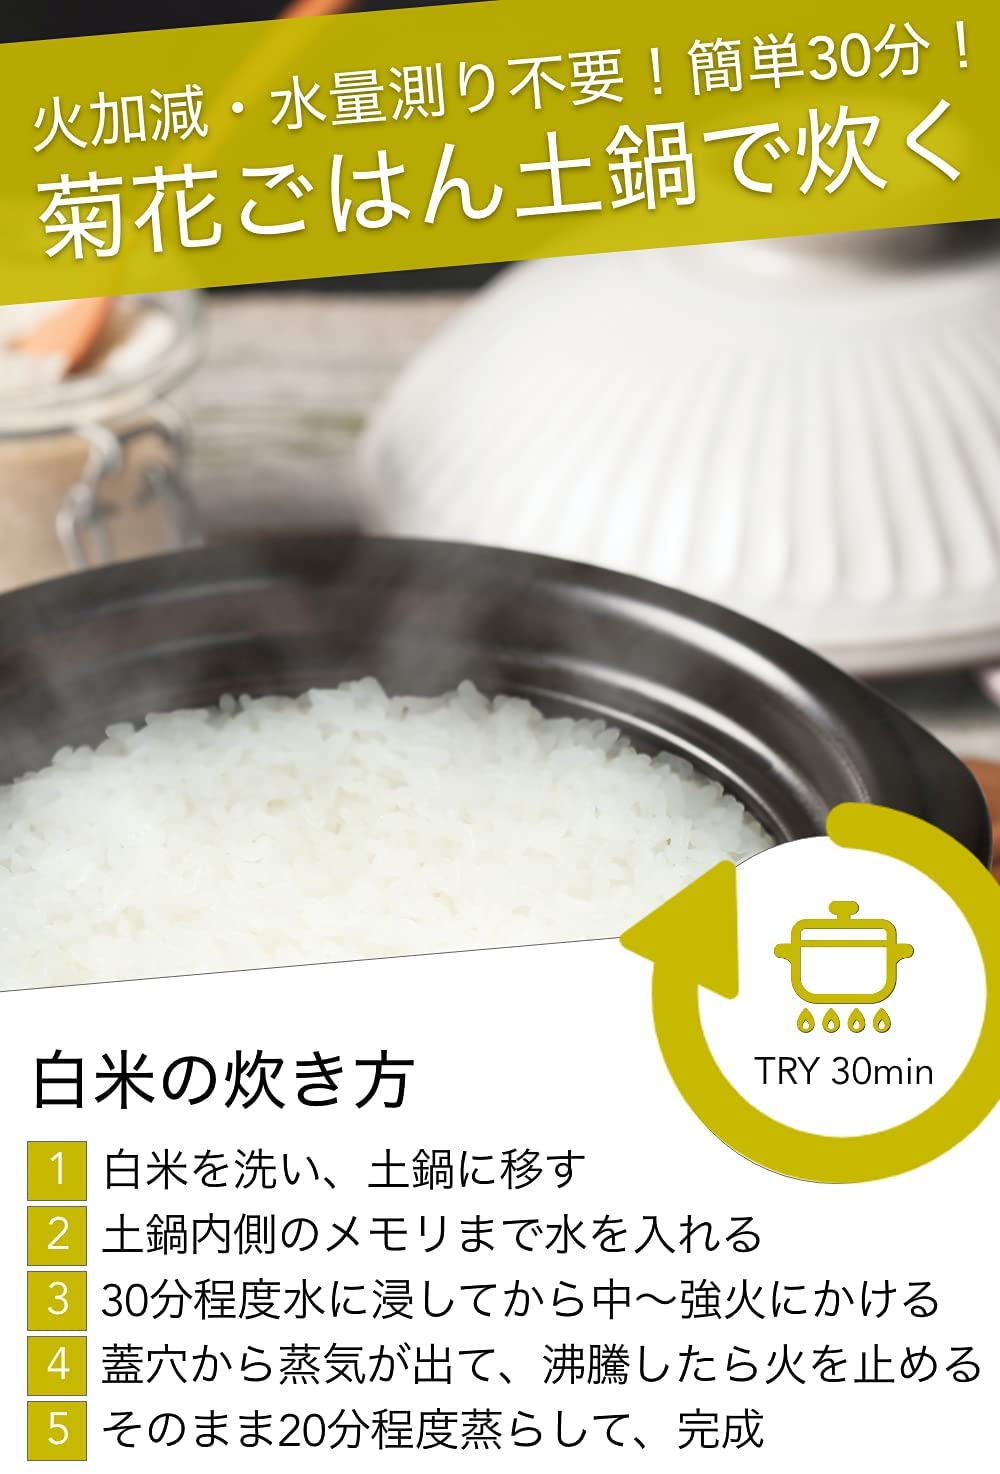 銀峯陶器(GINPO) 菊花 ごはん土鍋の商品画像サムネ4 